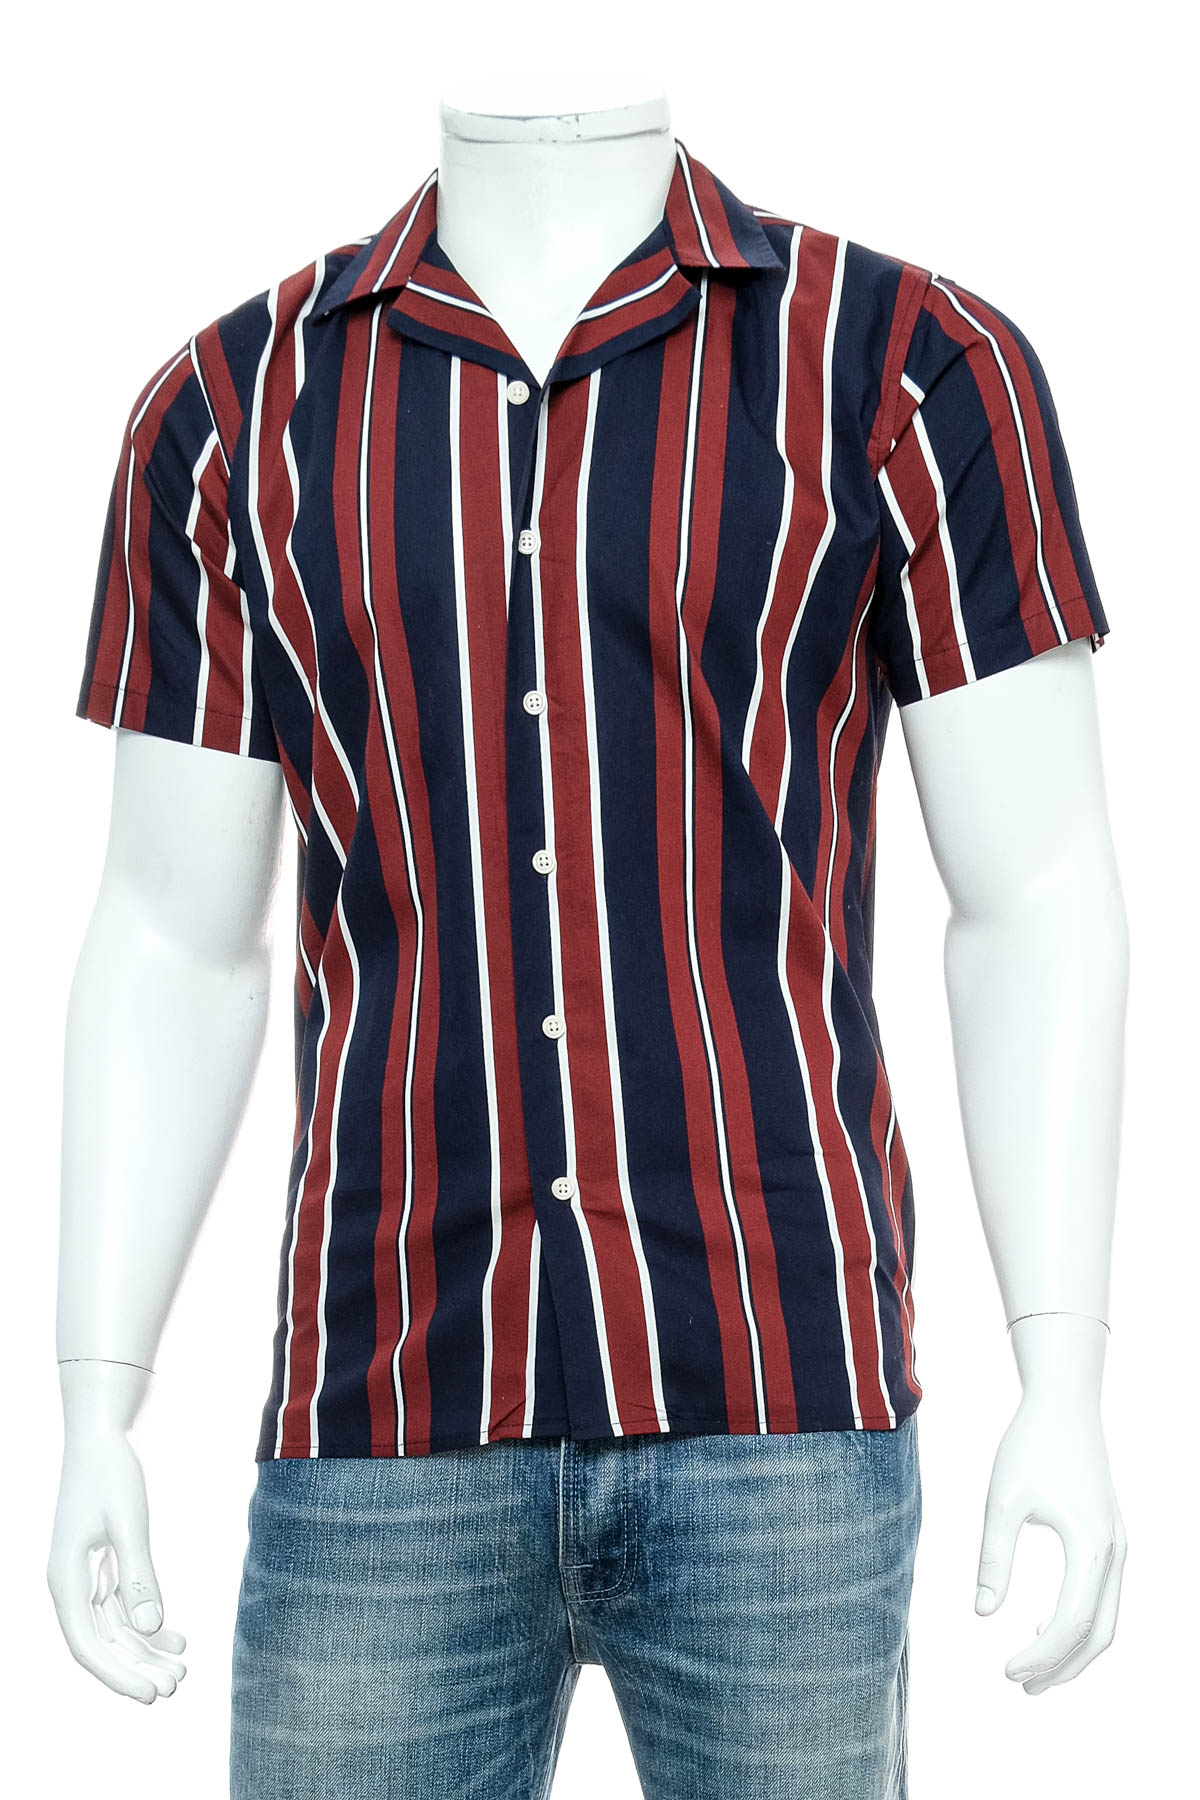 Ανδρικό πουκάμισο - NERVE - 0